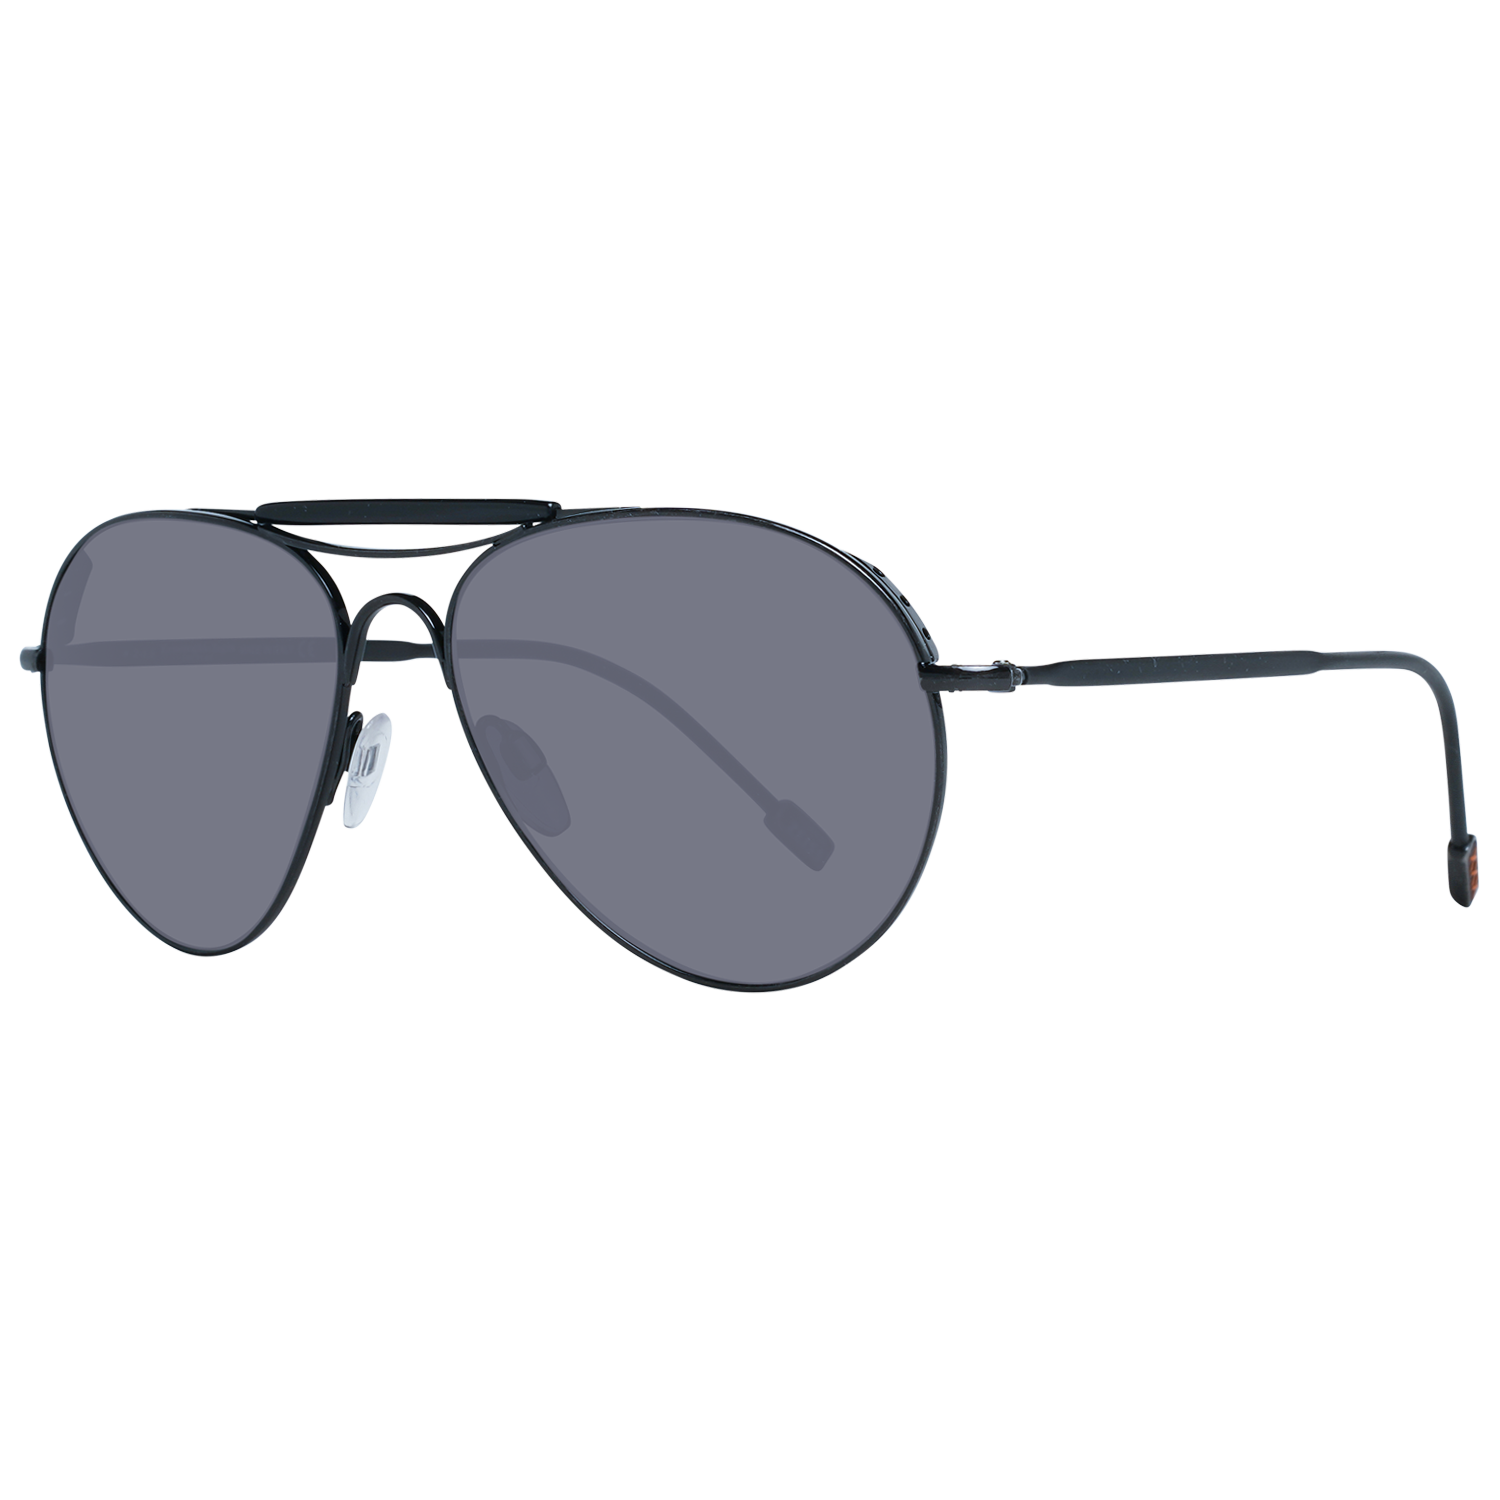 Zegna Couture Sunglasses Zegna Couture Sunglasses ZC0020 57 02A Titanium Eyeglasses Eyewear UK USA Australia 